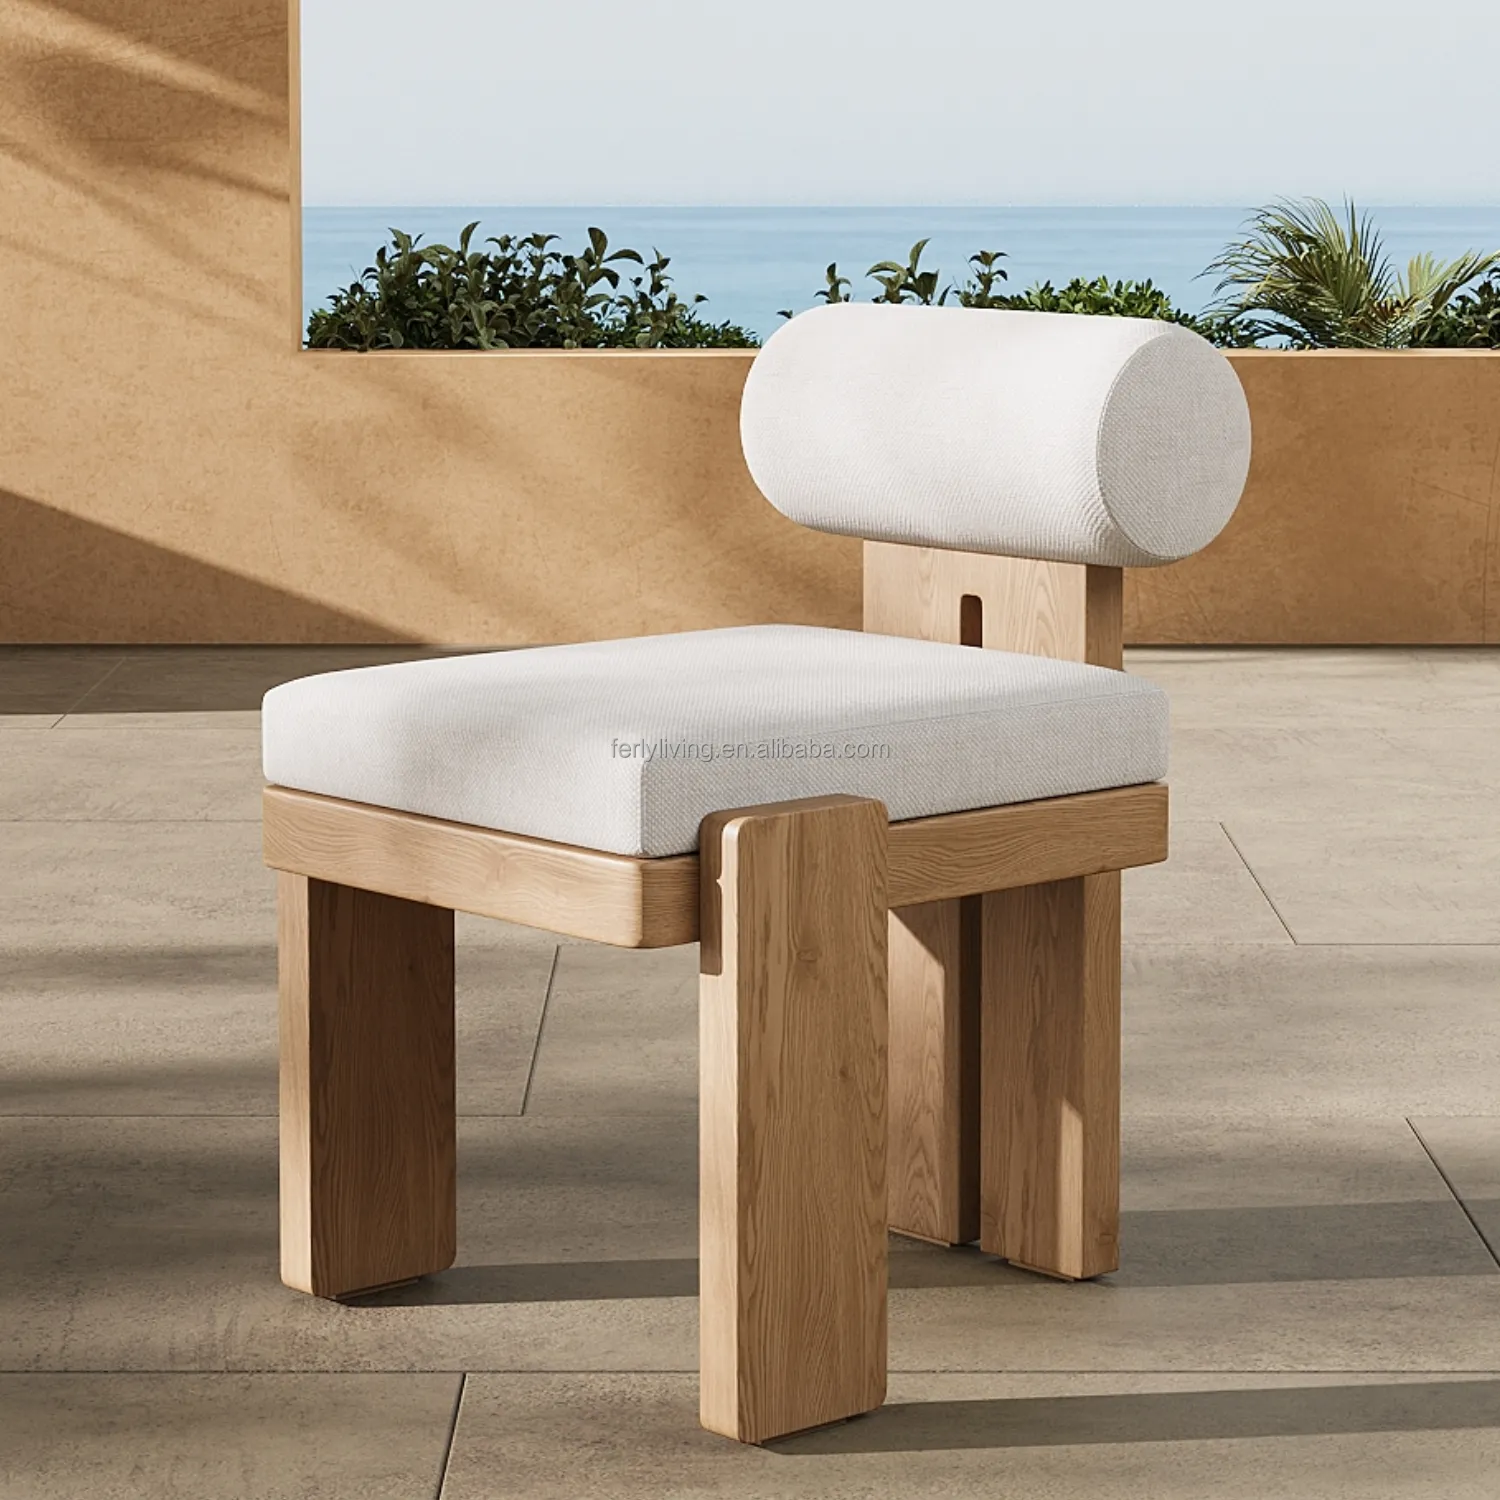 Felly nuovo Design moderno giardino esterno mobili da salotto sala da pranzo in Teak poltrona di importazione sedia Set